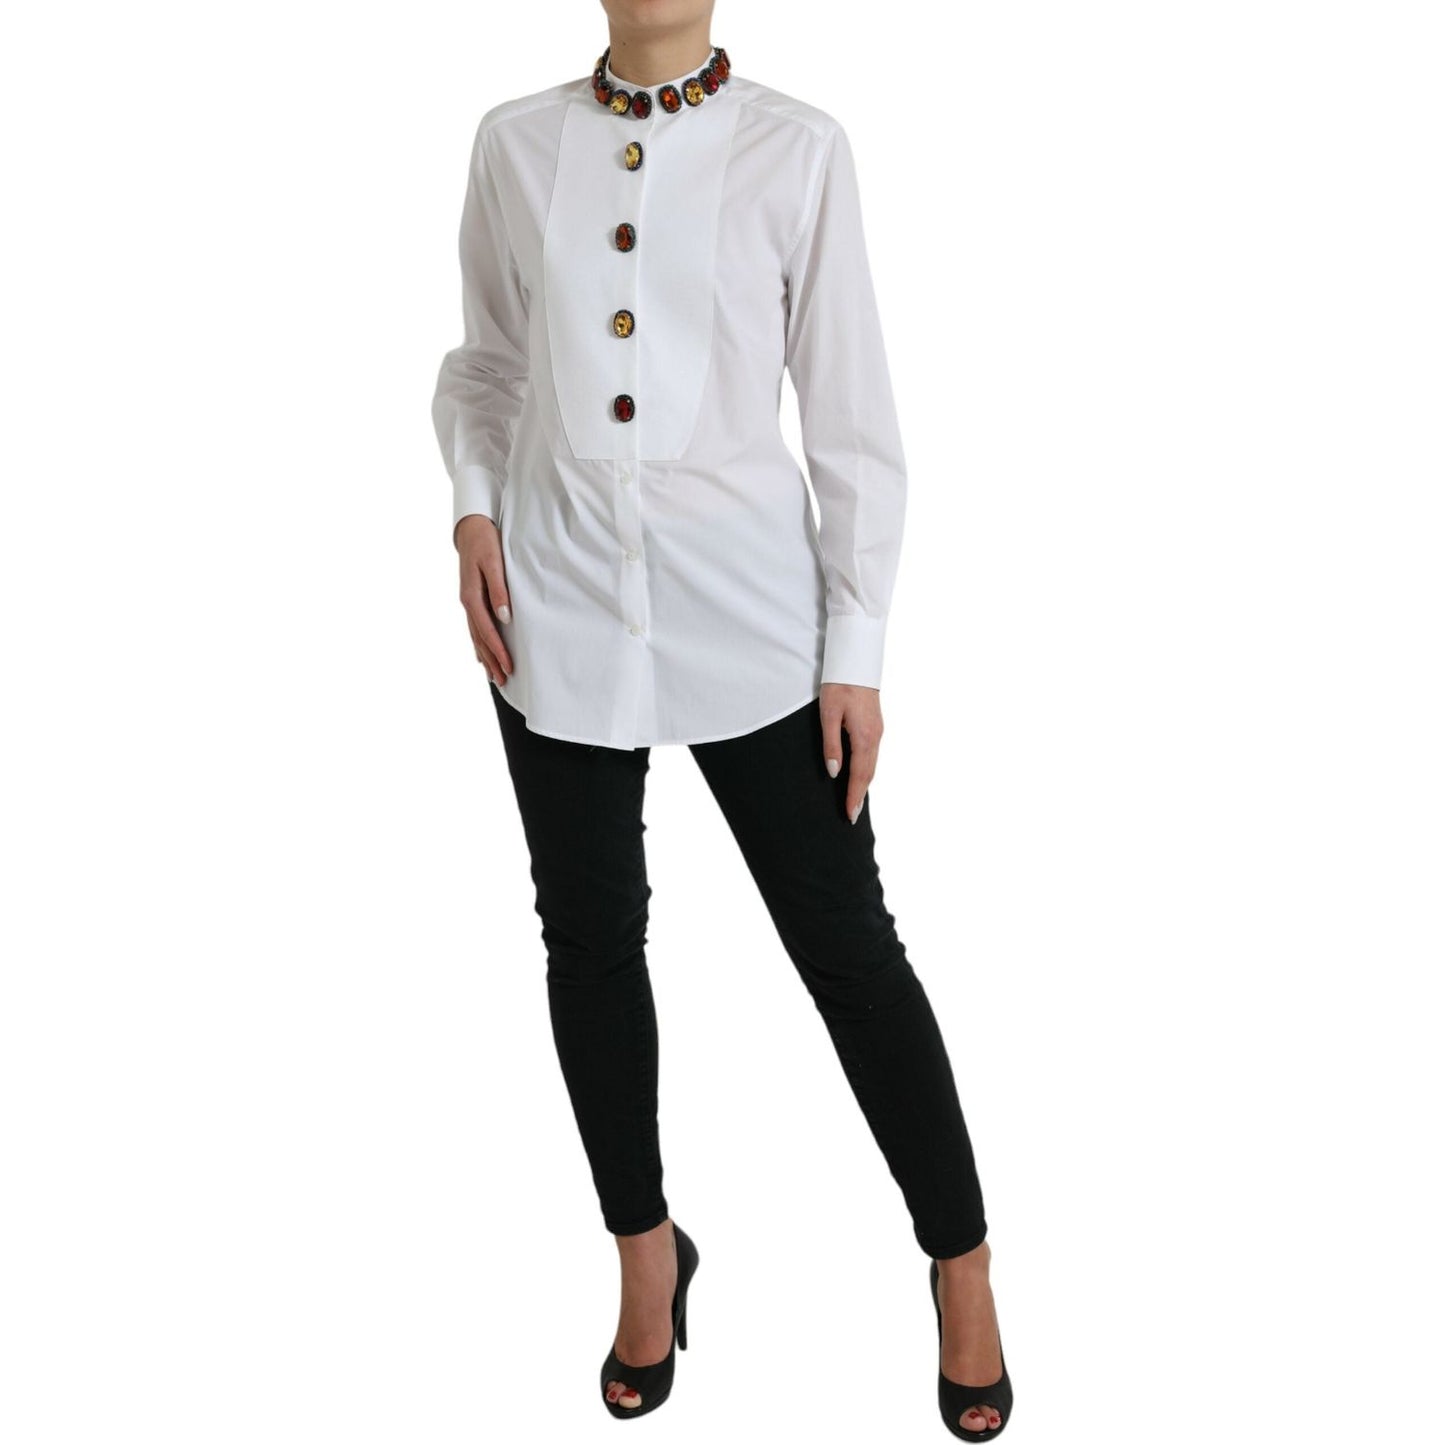 Dolce & Gabbana Elegant Crystal-Embellished White Cotton Top white-cotton-crystals-embellished-shirt-top